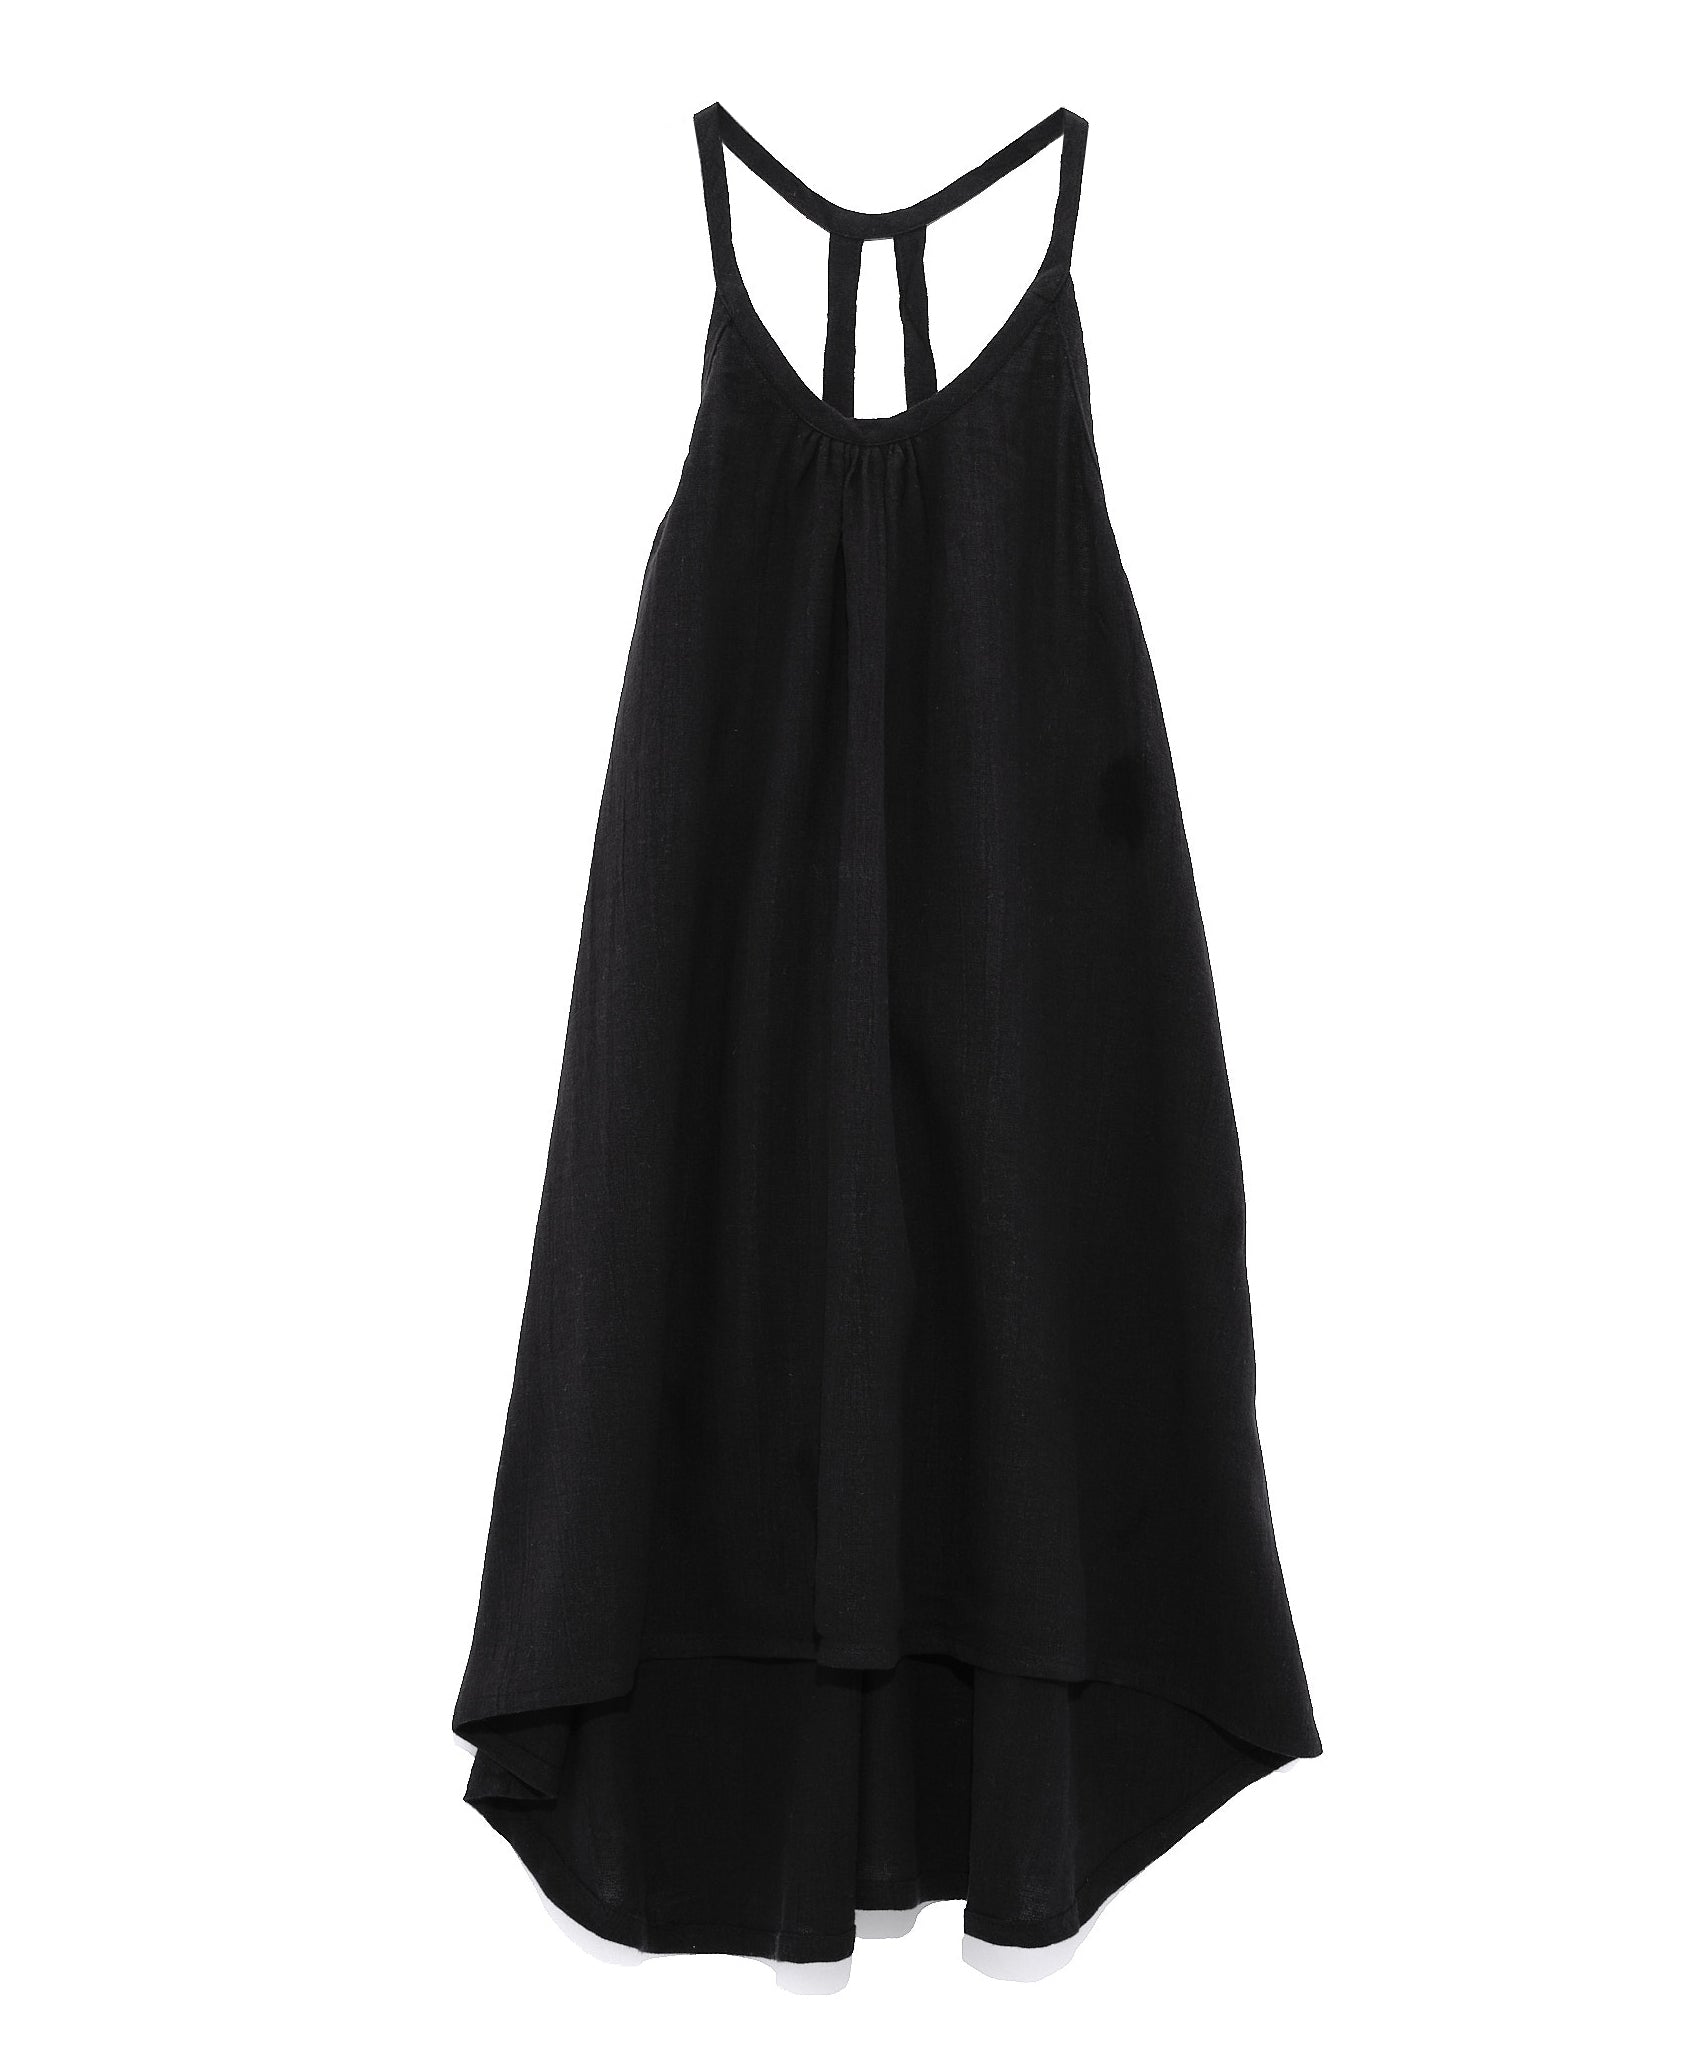 Meridian Slip Dress in color Black